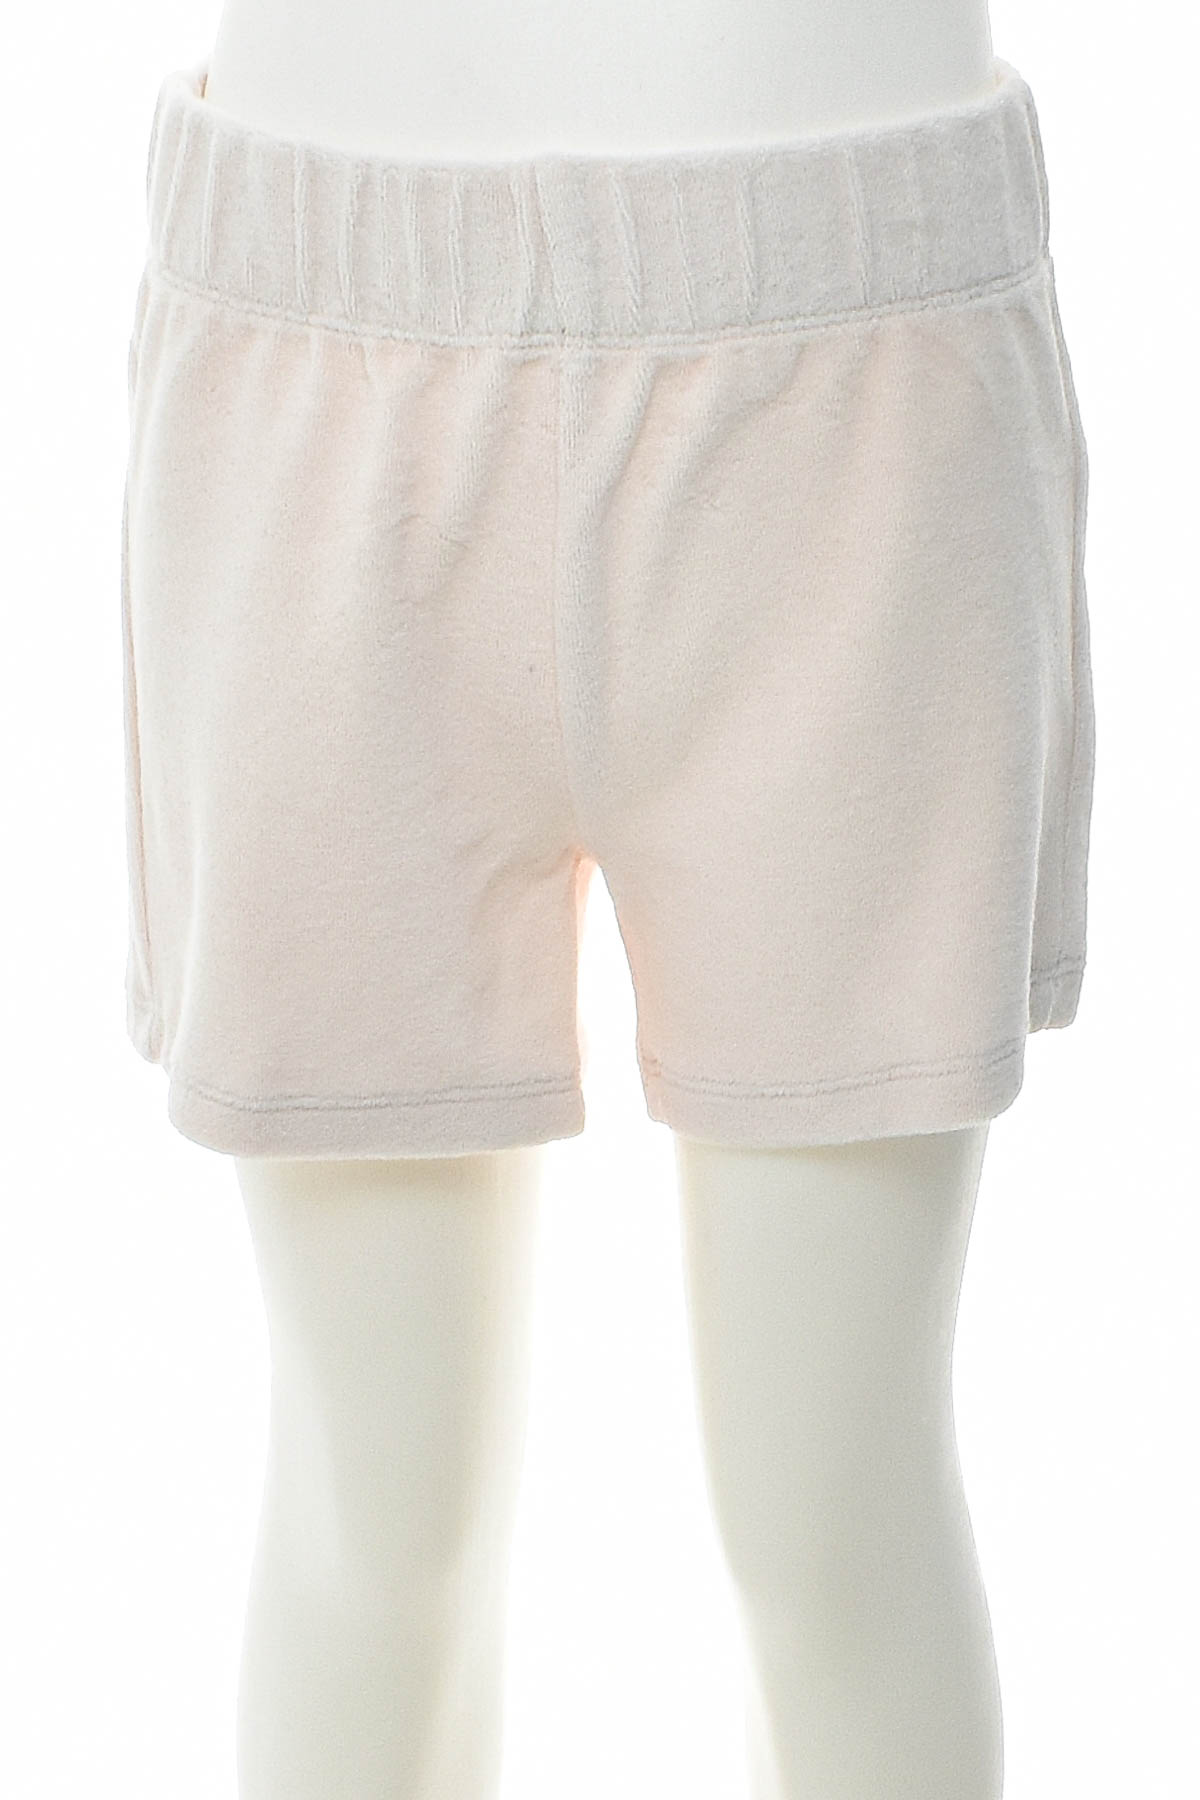 Shorts for girls - Mini Gina Tricot - 0